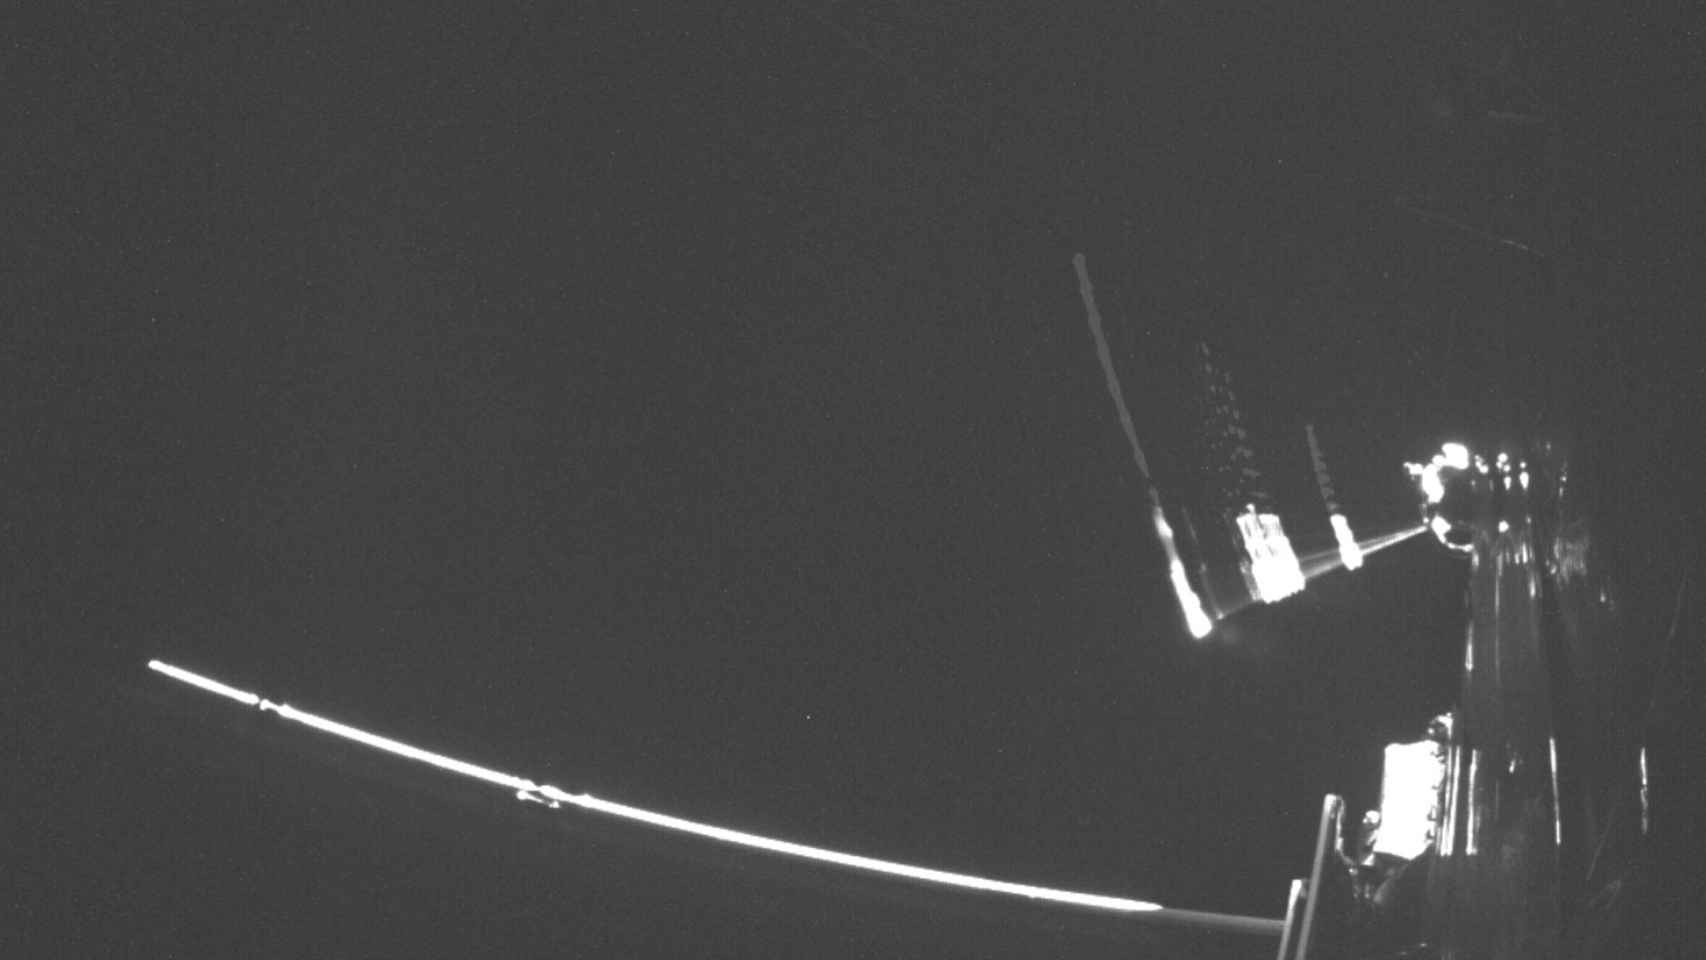 Captura del GIF de la ESA en el que se registra el despliegue de la cuarta sonda Langmuir.